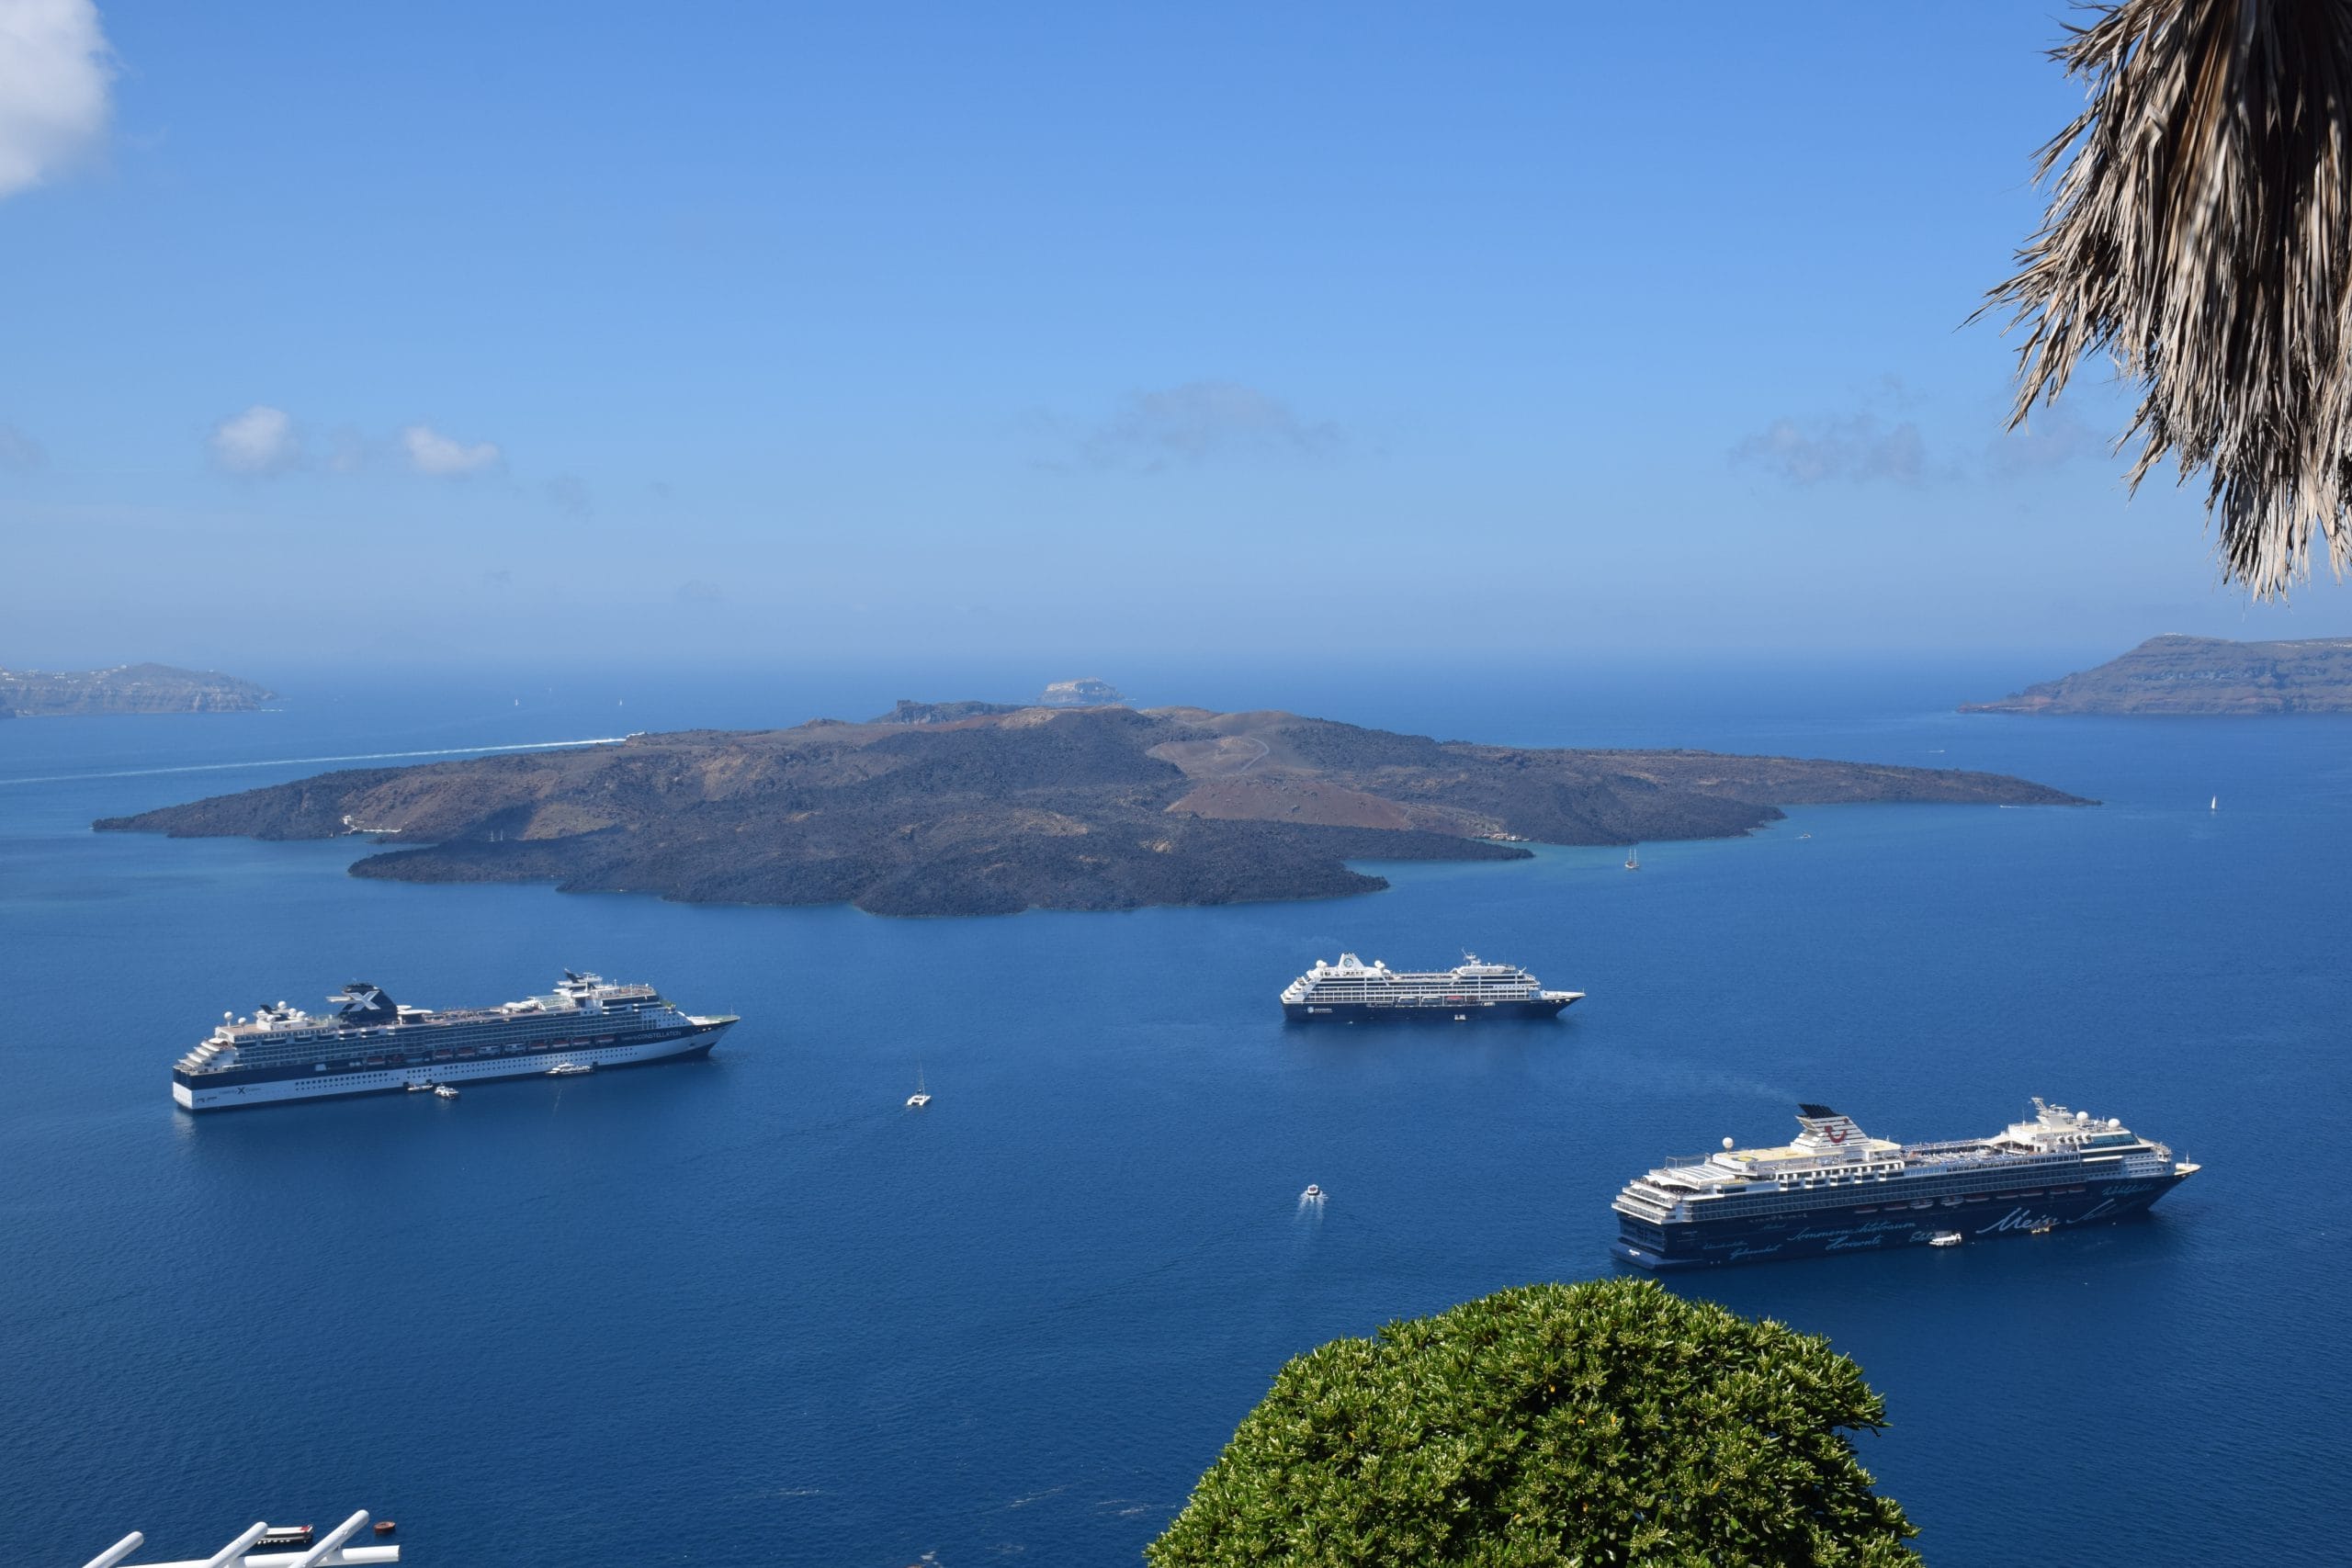 several ships in the caldera at Santorini